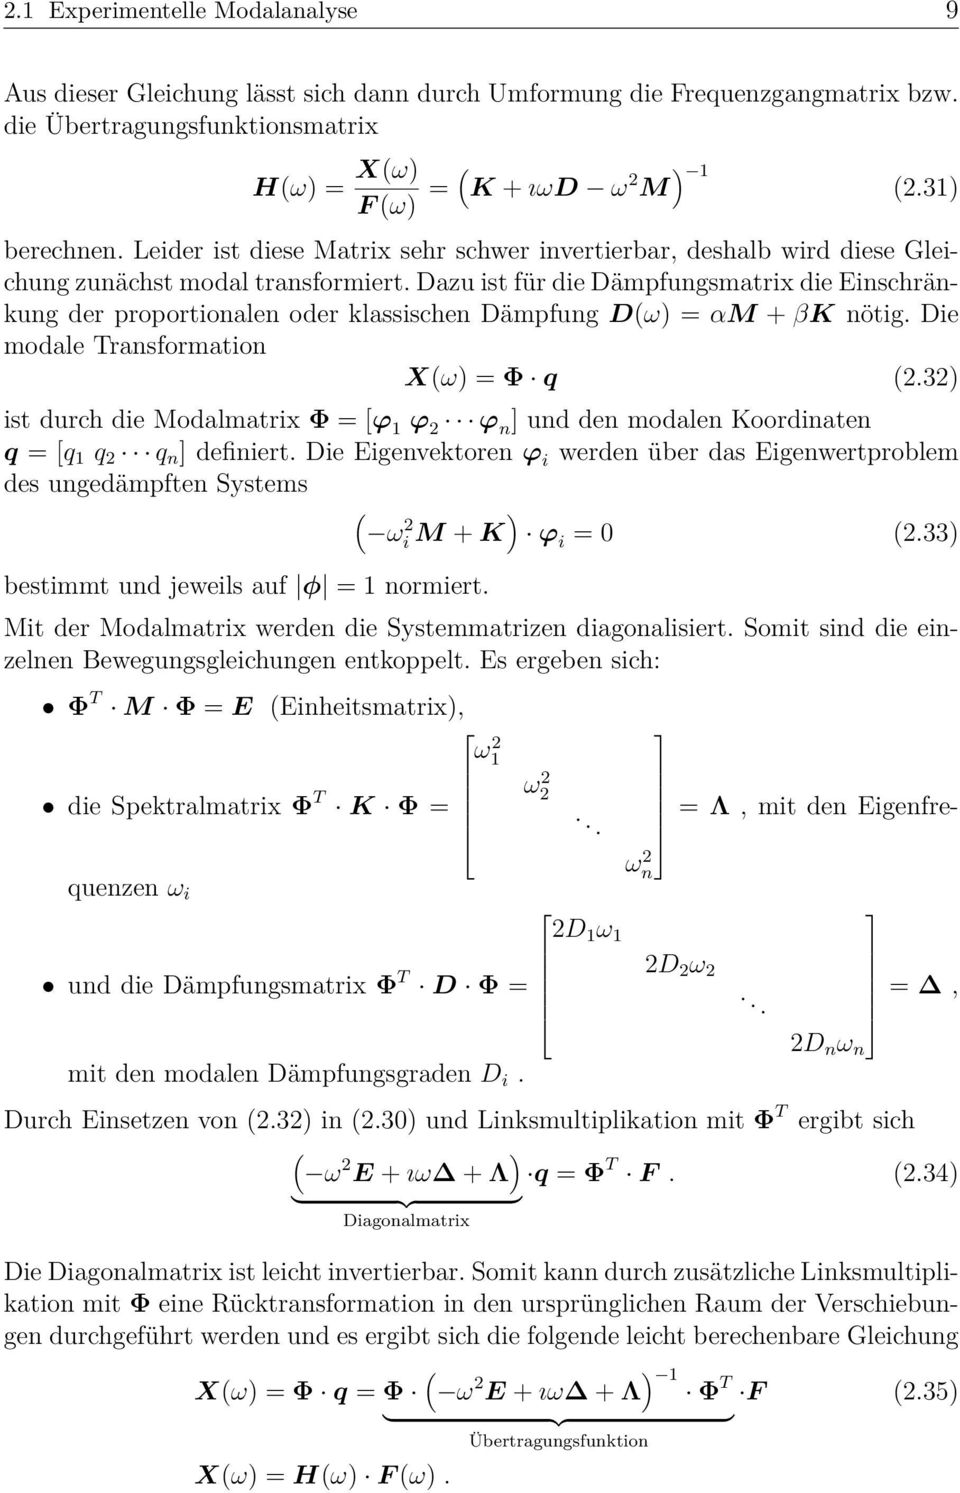 Dazu ist für die Dämpfungsmatrix die Einschränkung der proportionalen oder klassischen Dämpfung D(ω) = αm + βk nötig. Die modale Transformation X(ω) = Φ q (2.